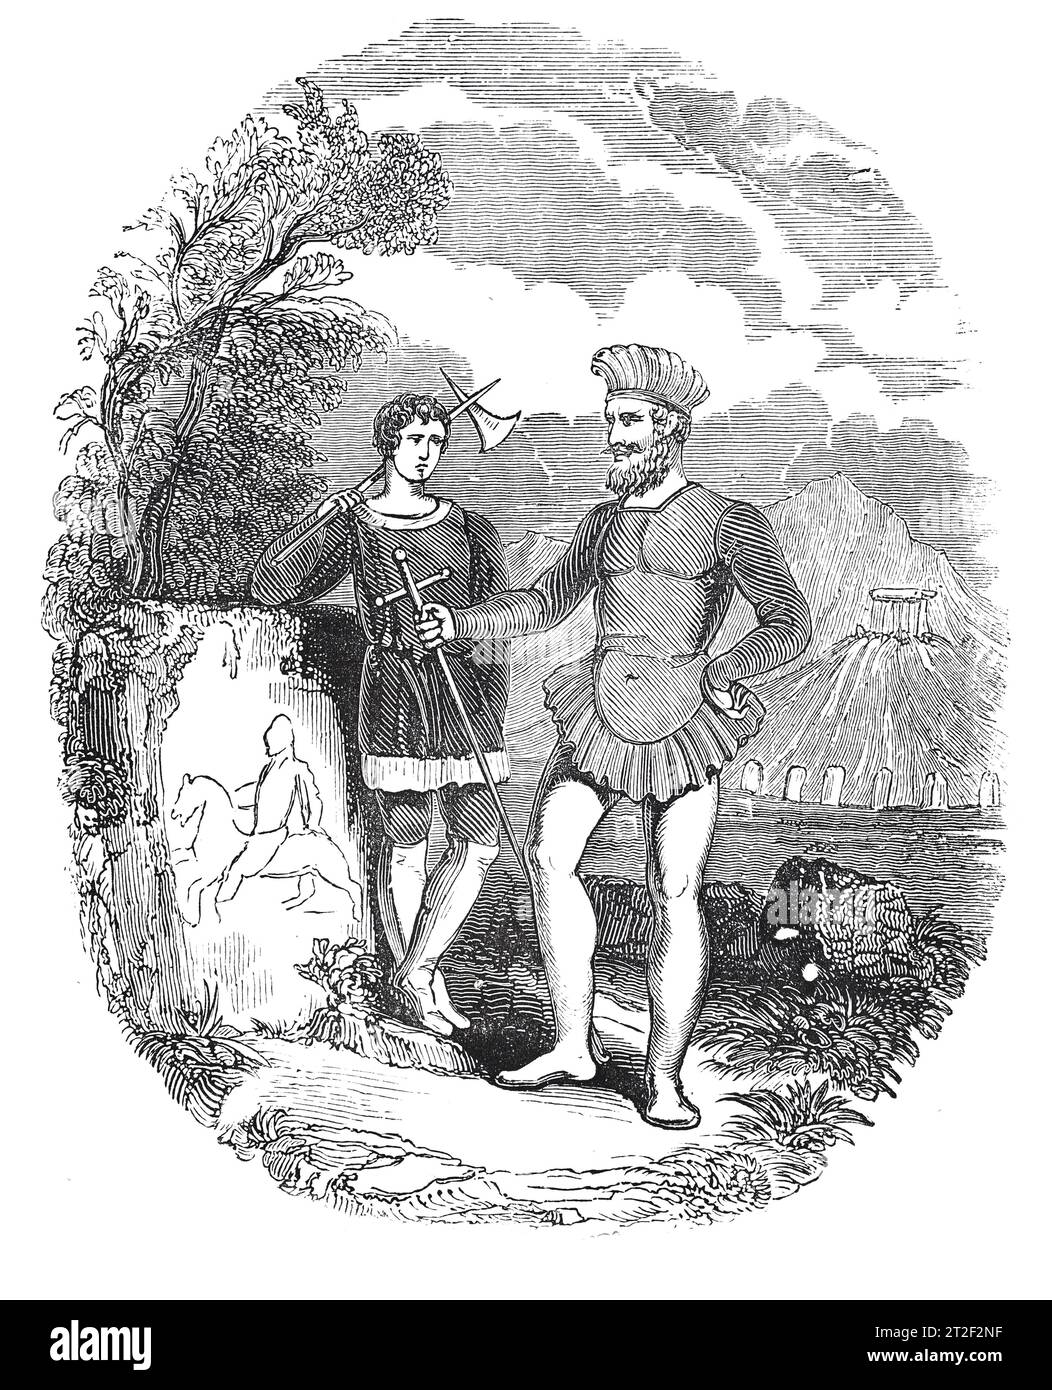 Armi e costumi dei guerrieri danesi. Black and White Illustration from the 'Old England' pubblicato da James Sangster nel 1860. Foto Stock